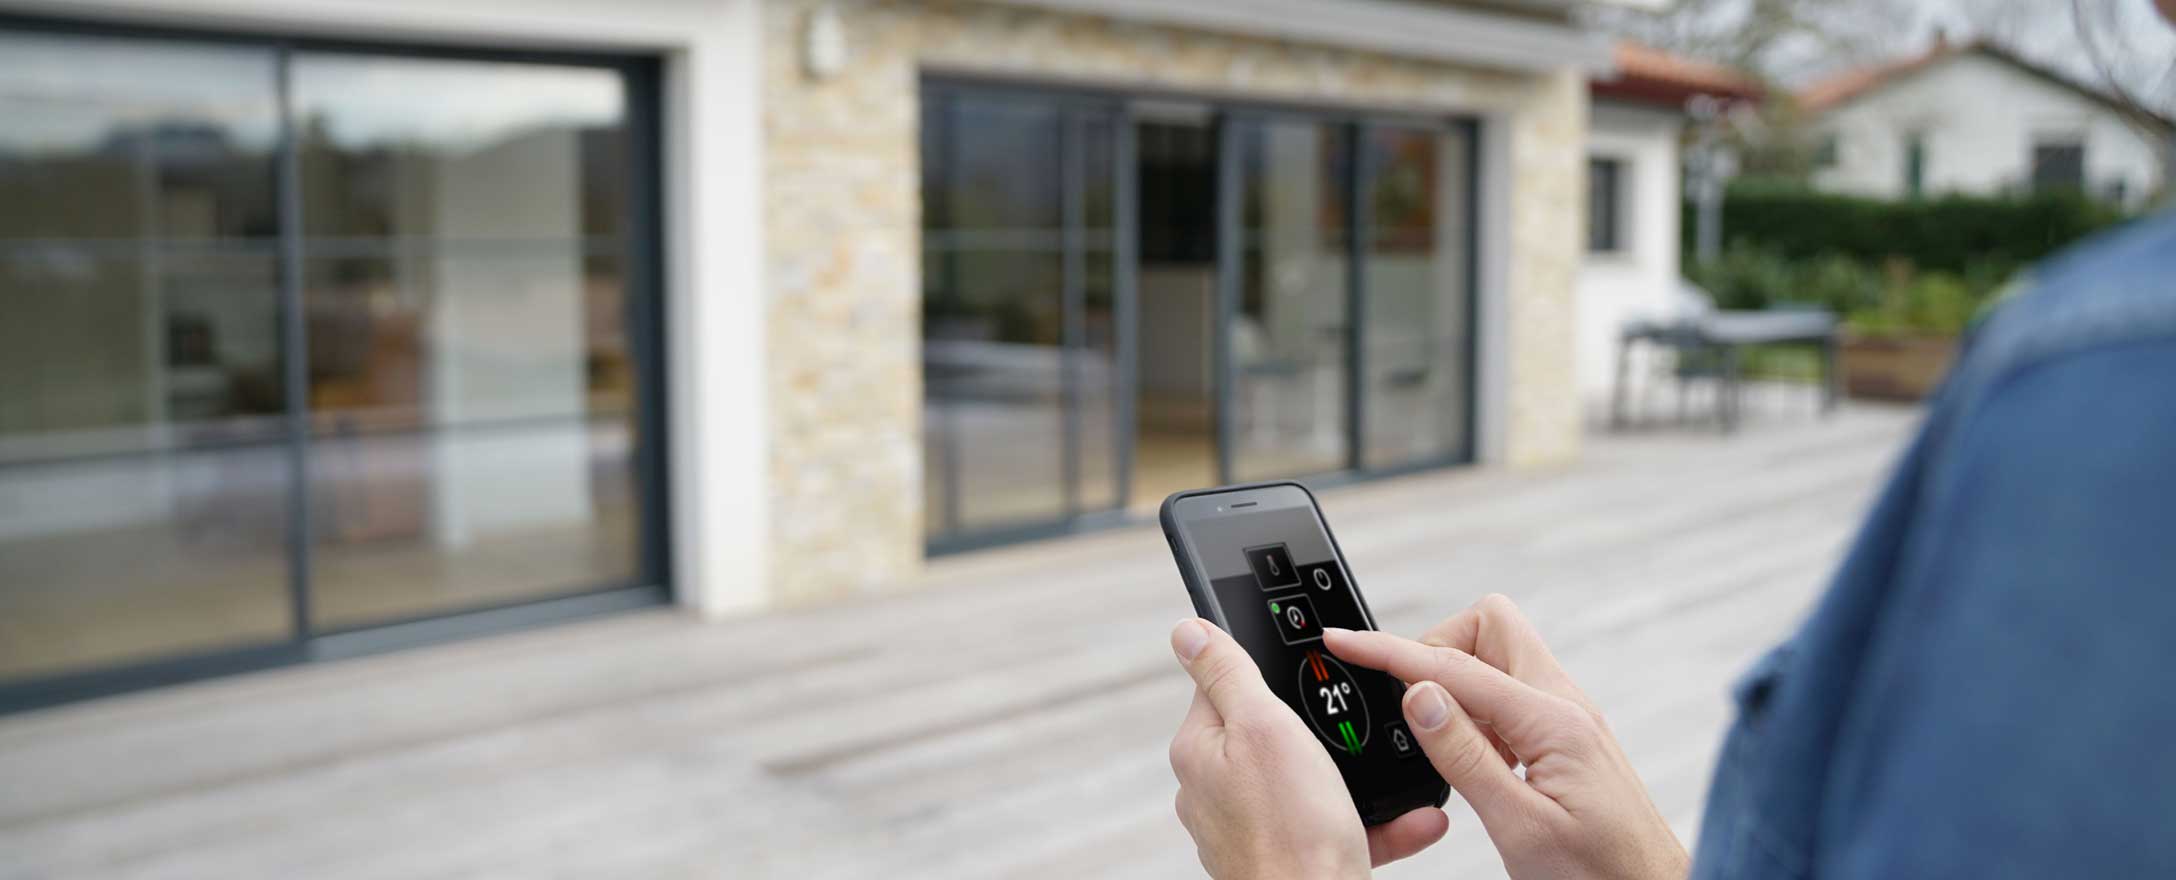 Frau verwendet App für Smart Home vor ihrem Haus